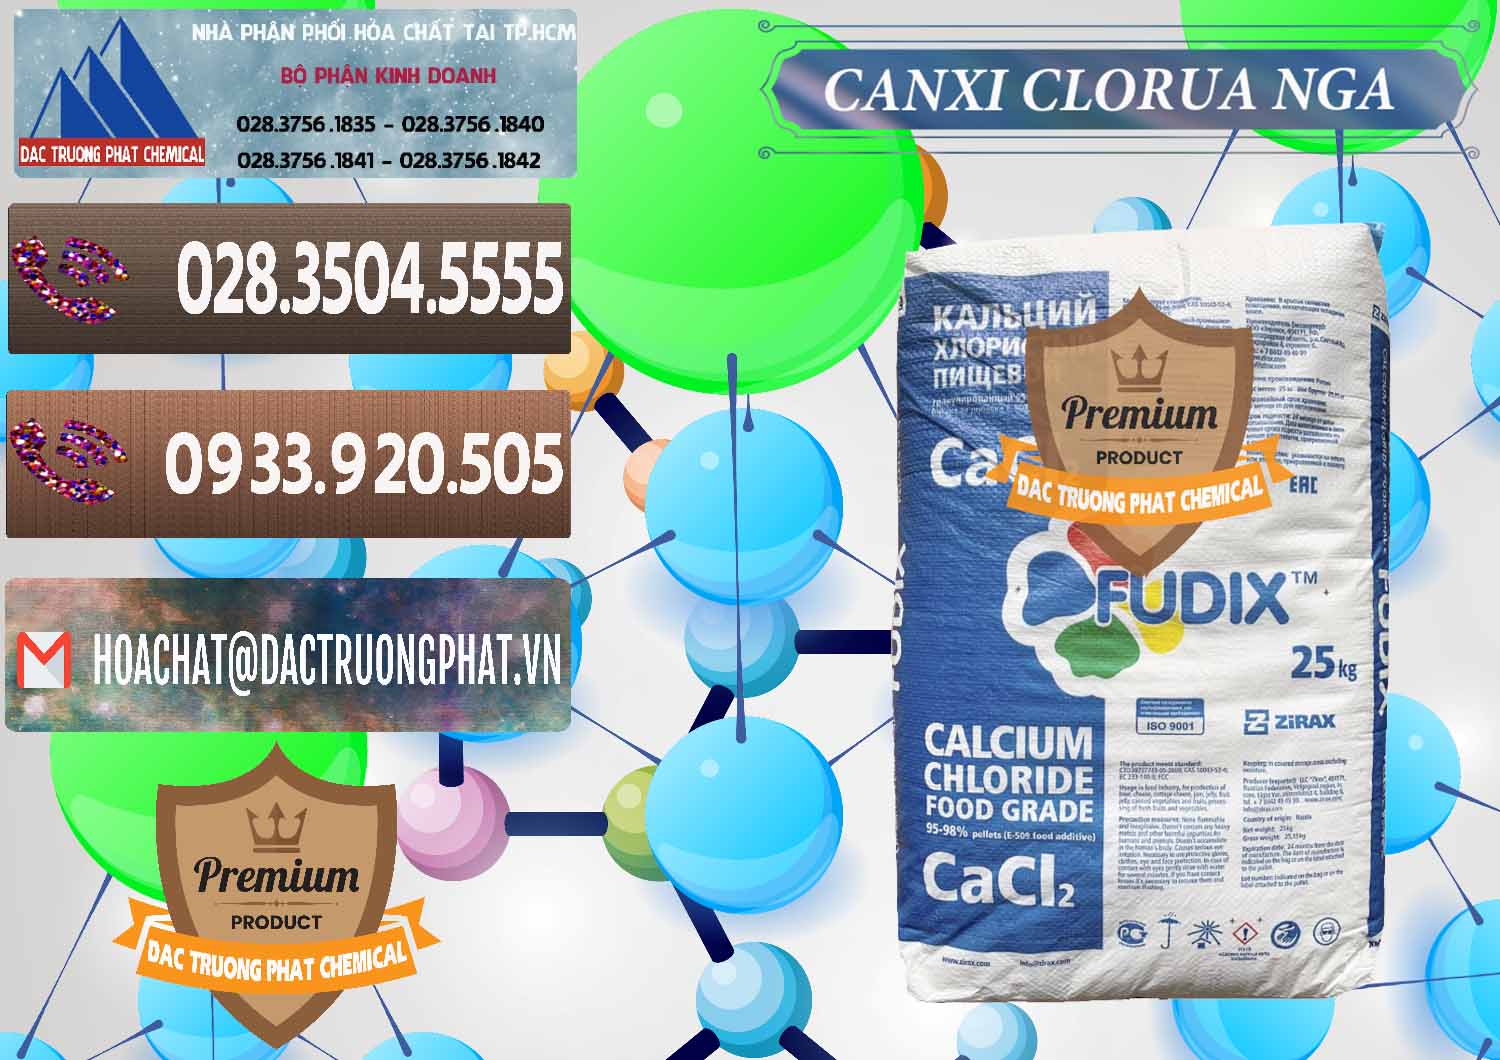 Chuyên nhập khẩu và bán CaCl2 – Canxi Clorua Nga Russia - 0430 - Đơn vị nhập khẩu và phân phối hóa chất tại TP.HCM - hoachatviet.net